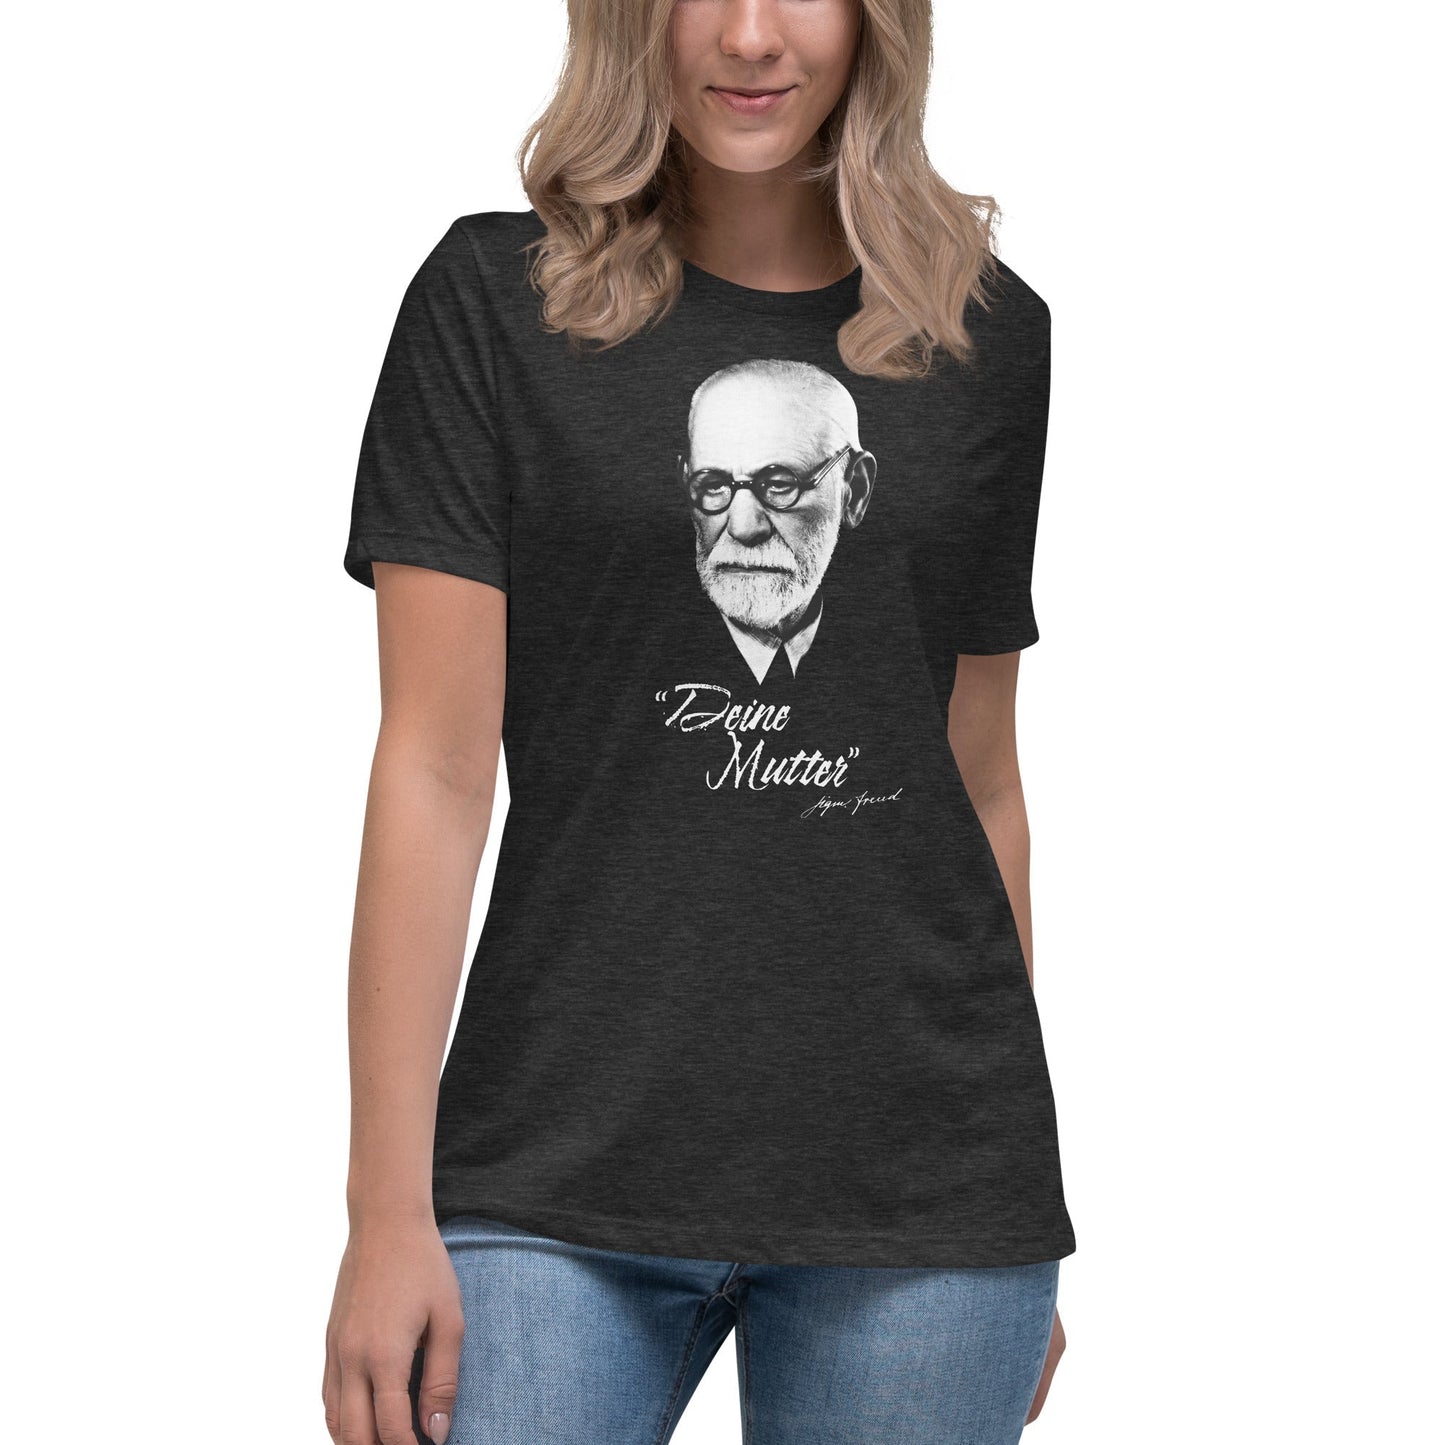 Sigmund Freud - Deine Mutter (DE) - Women's T-Shirt